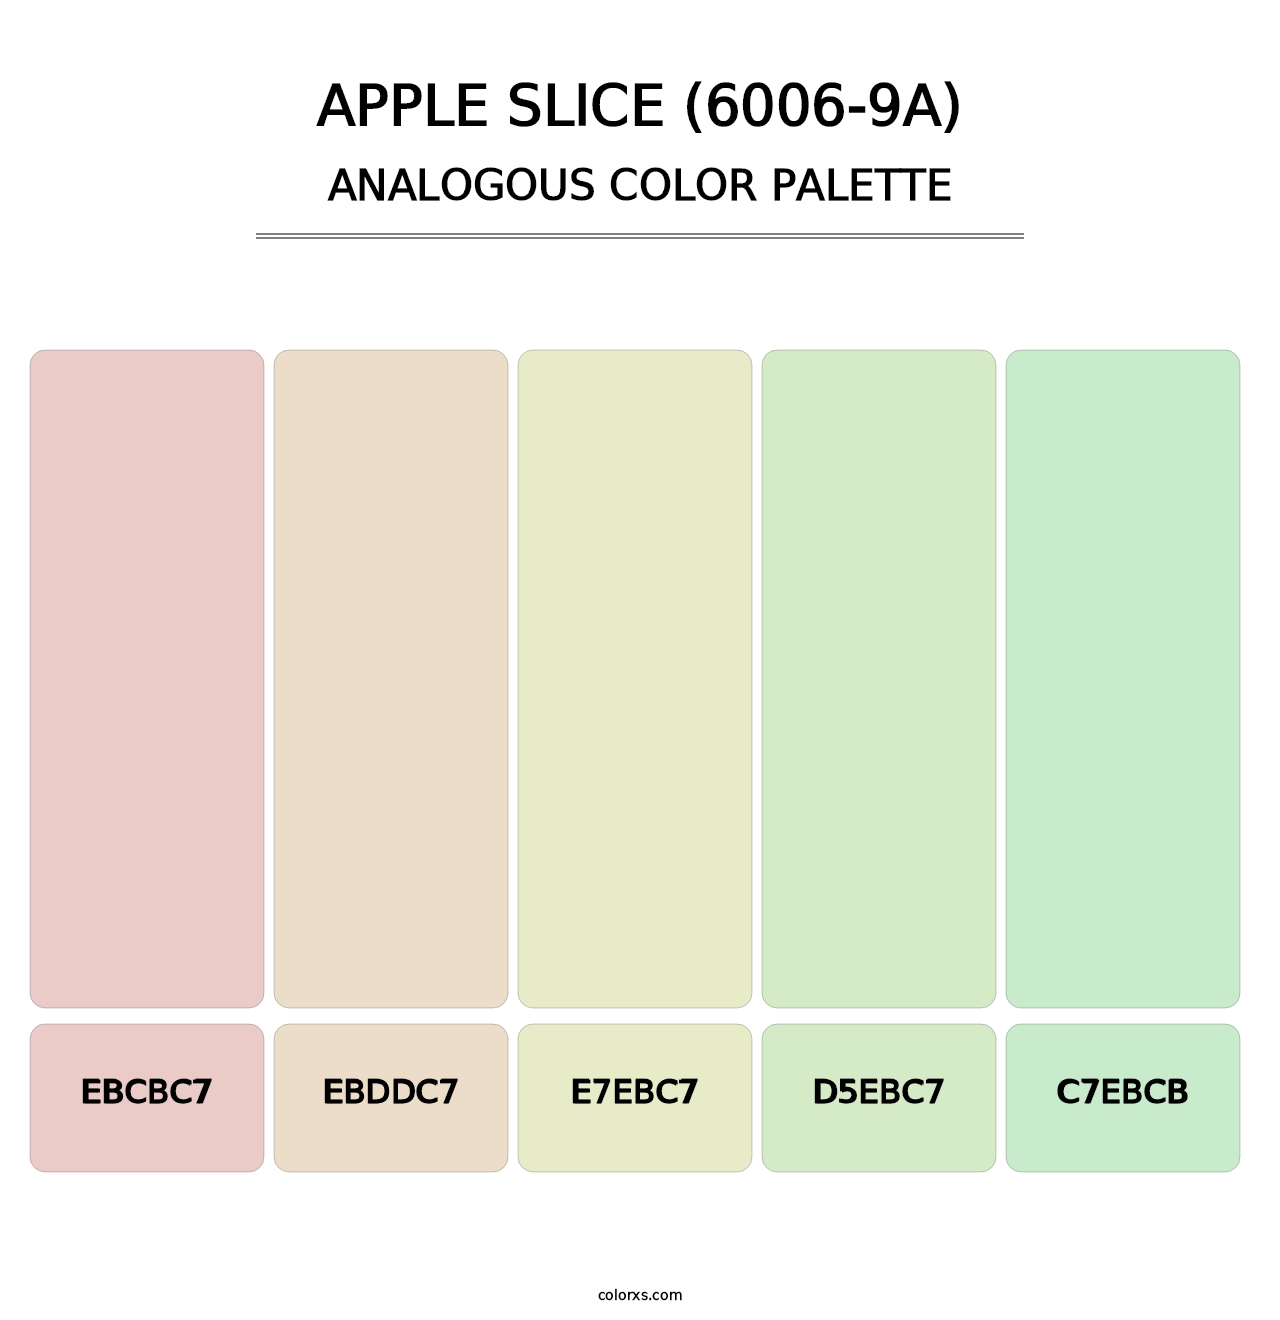 Apple Slice (6006-9A) - Analogous Color Palette